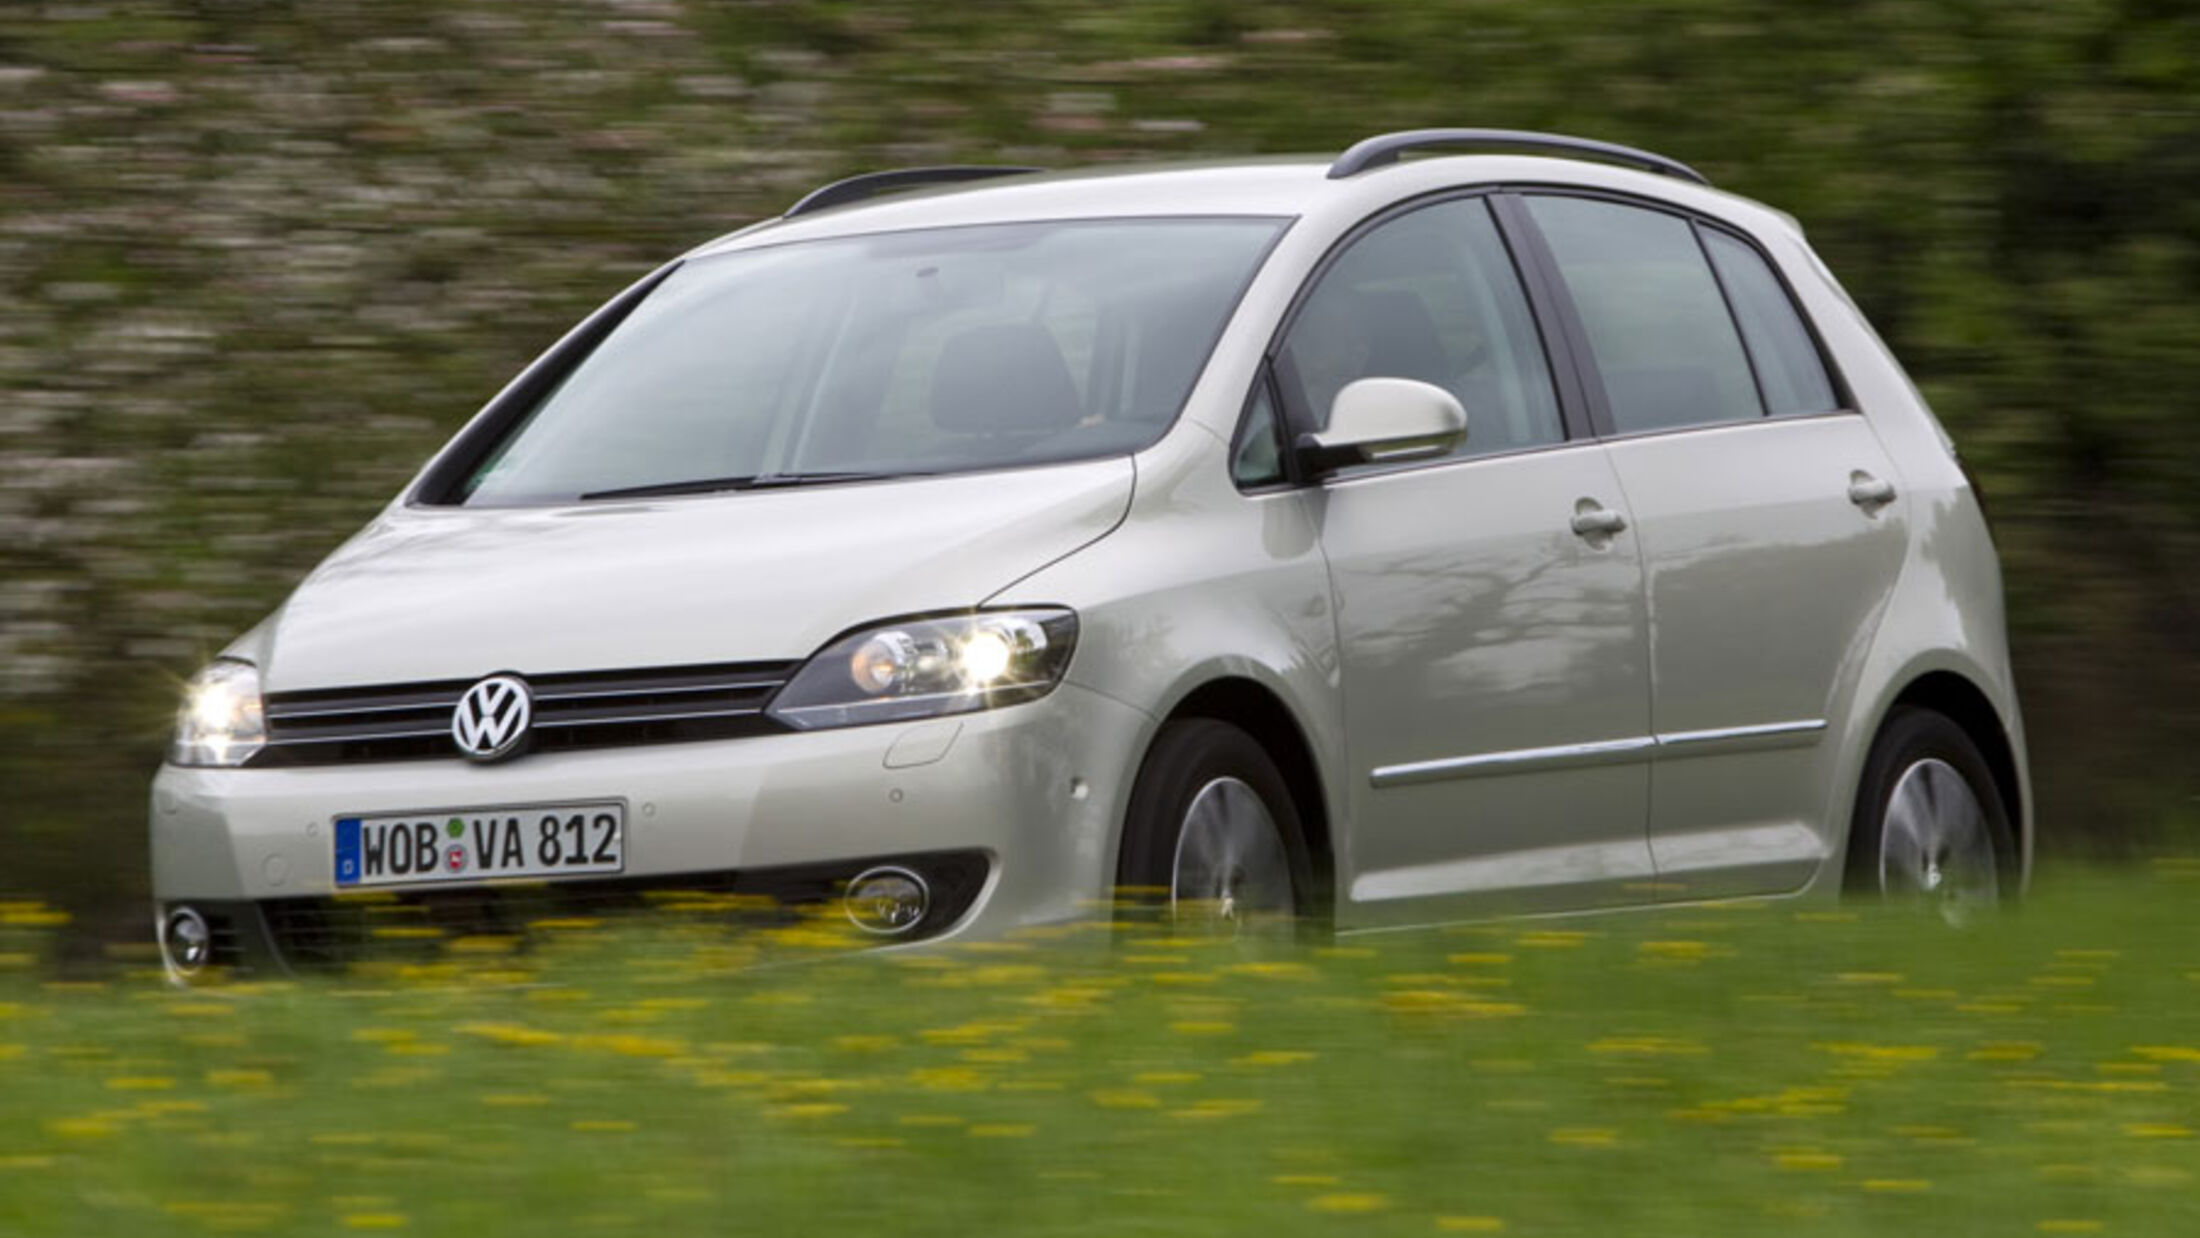 VW Golf Plus 1.2 TSI im Fahrbericht: Hochdach-Golf mit Turbomotor